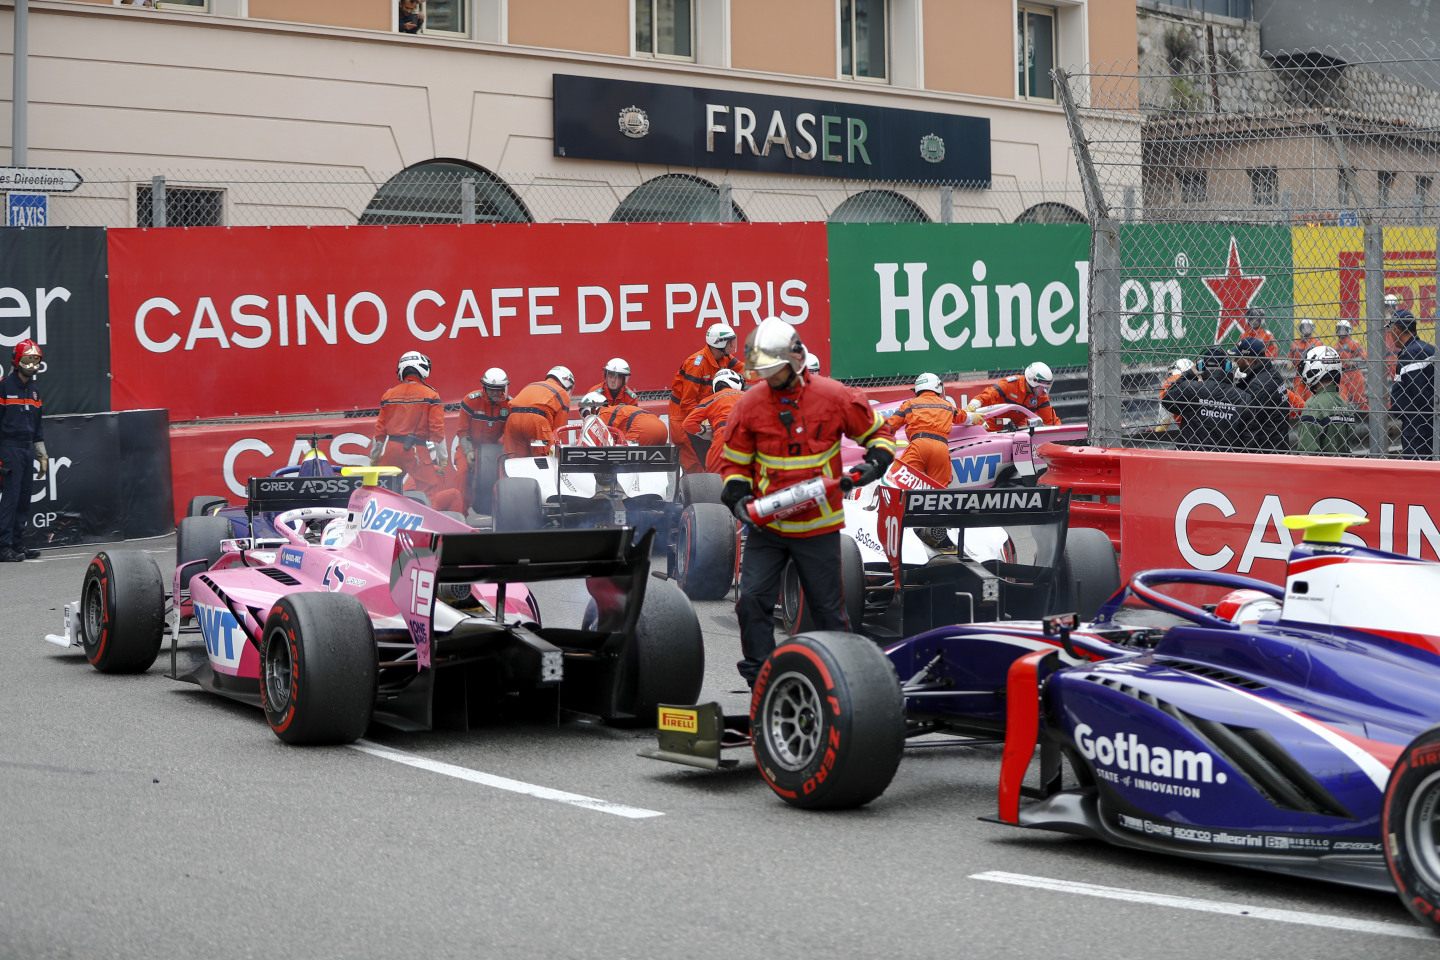 Маршалы разбирают завал после столкновения Шумахера и Кальдерон © FIA Formula 2 Championship